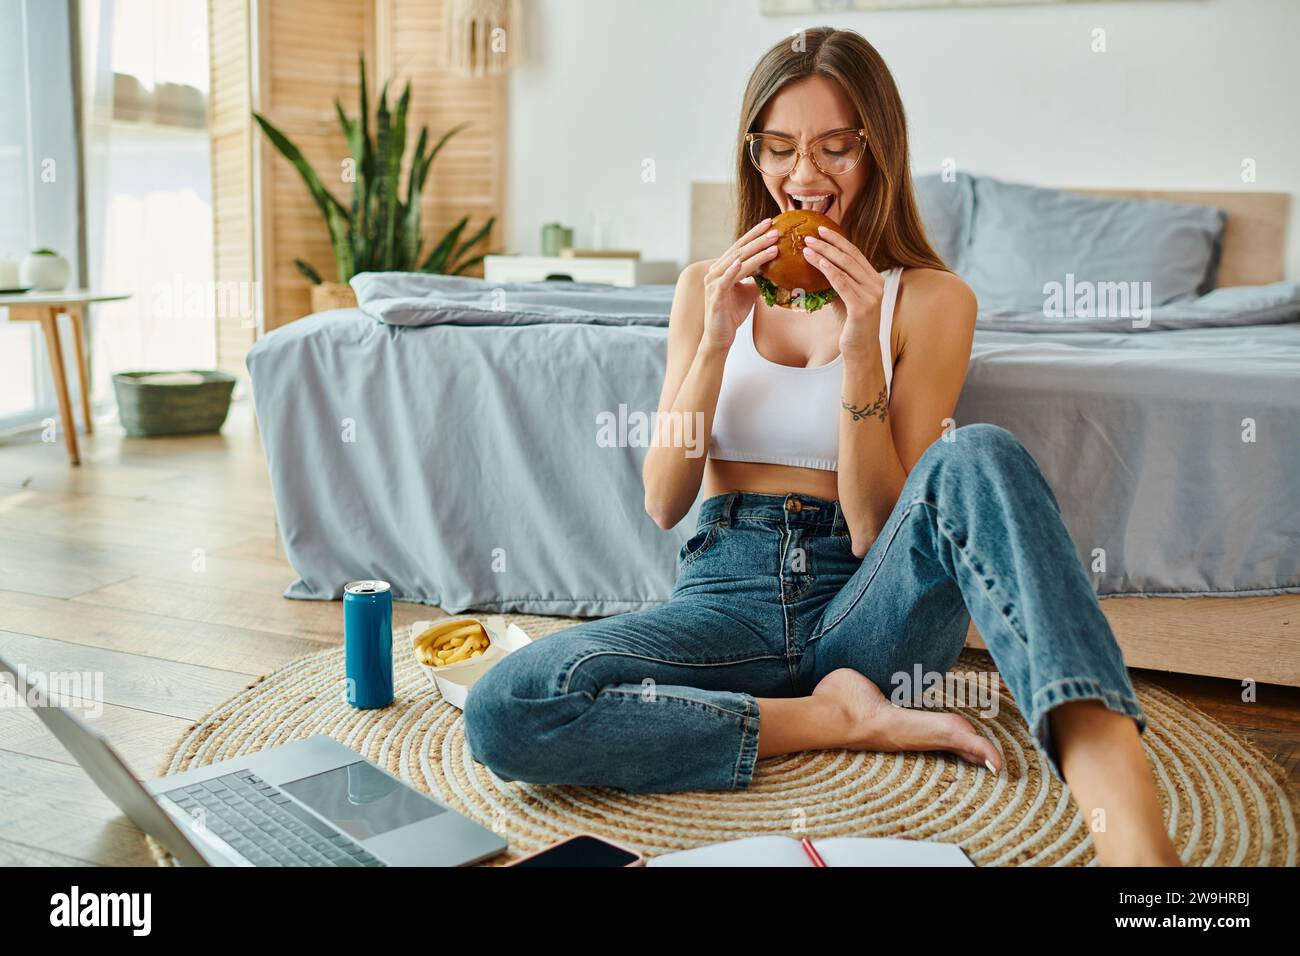 donna allegra e attraente in un abbigliamento informale seduta sul pavimento mentre lavora e si gusta un hamburger Foto Stock